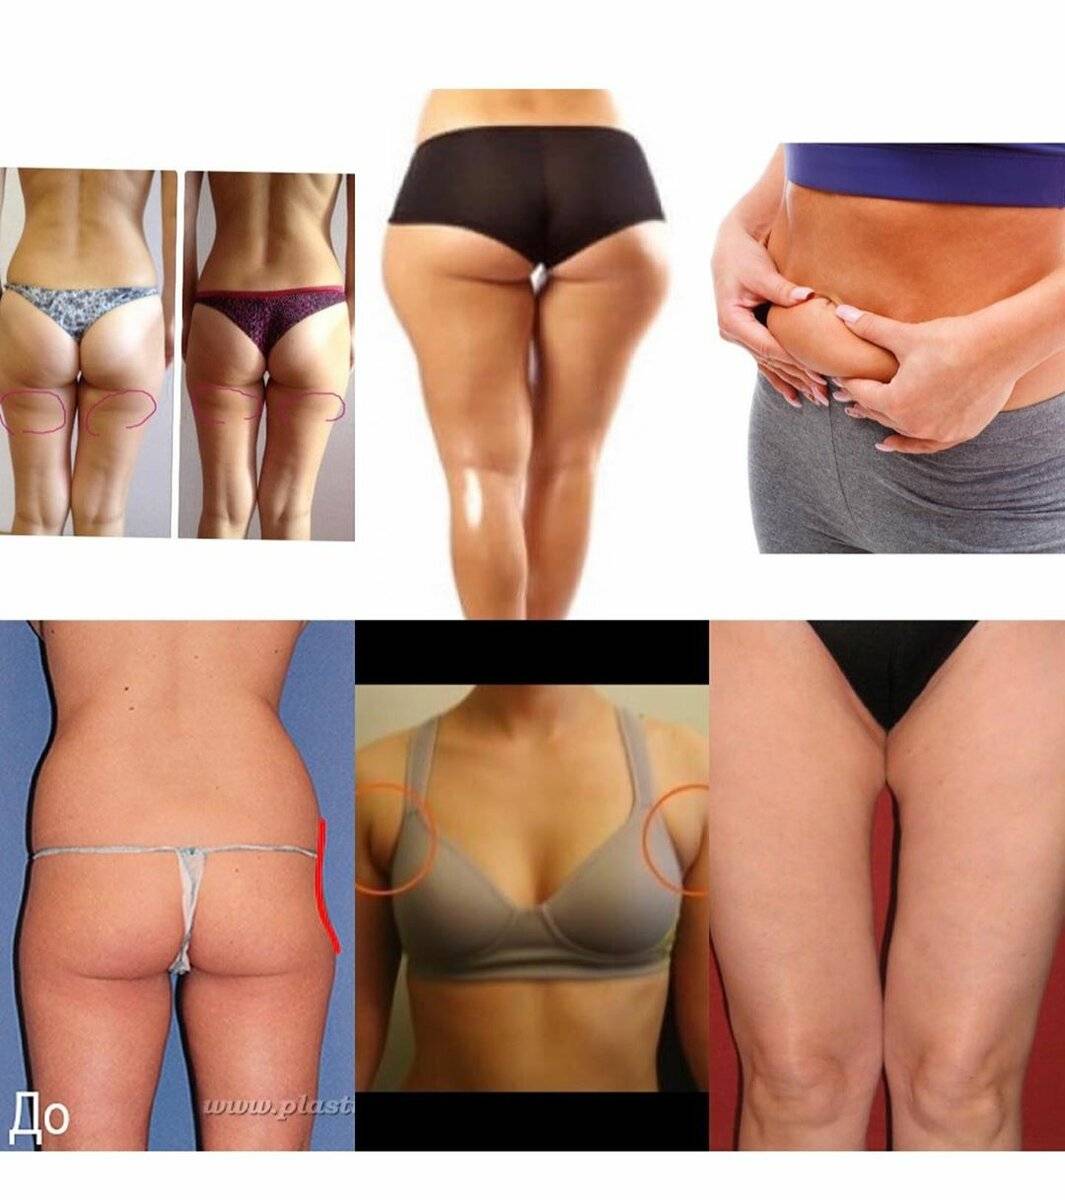 Липолитики для похудения - что это такое: инъекции липолитиков в живот, лицо, отзывы, фото до и после